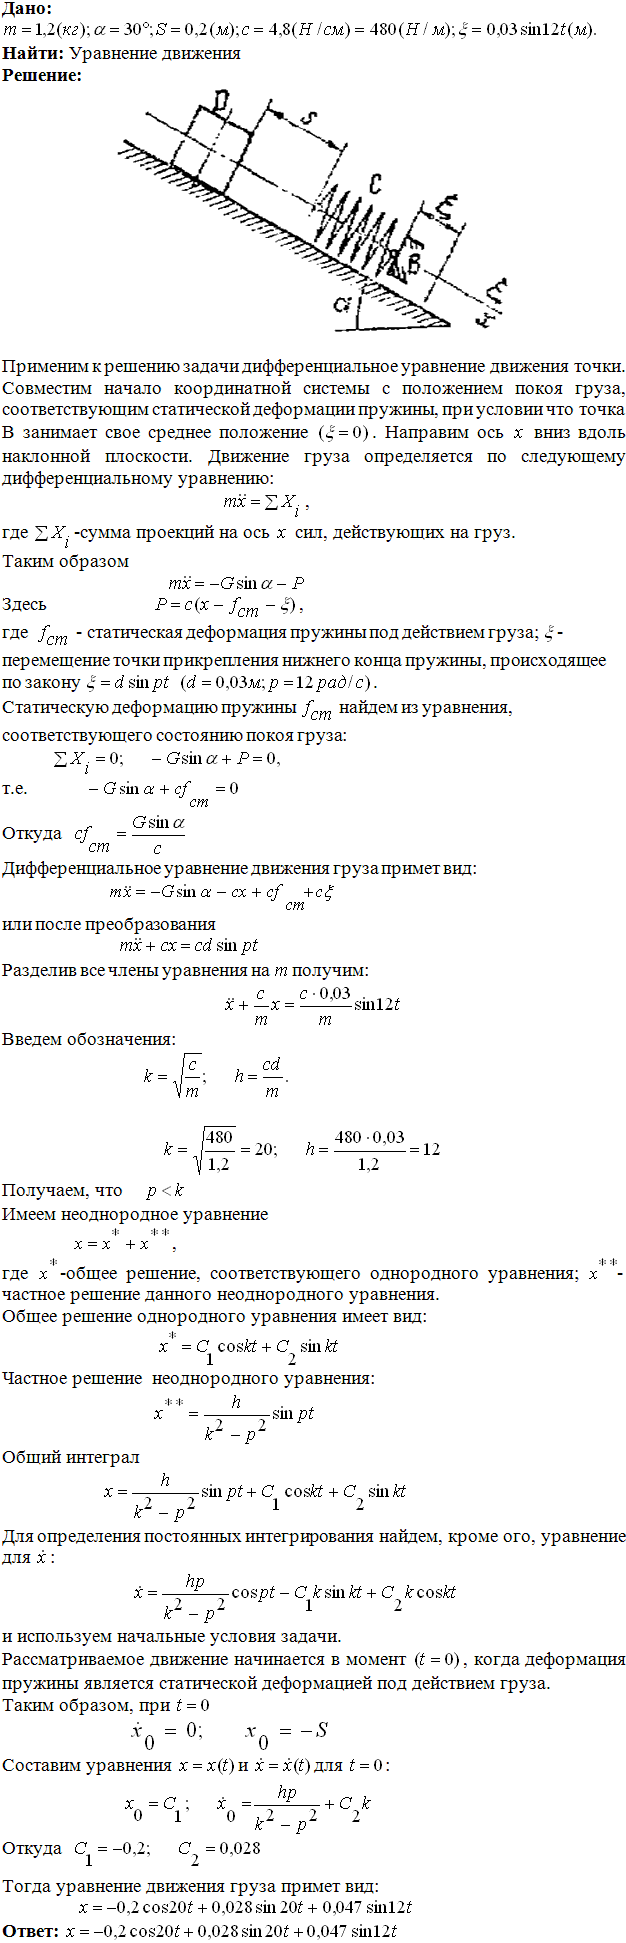 Яблонский задание Д3..., Задача 14652, Теоретическая механика